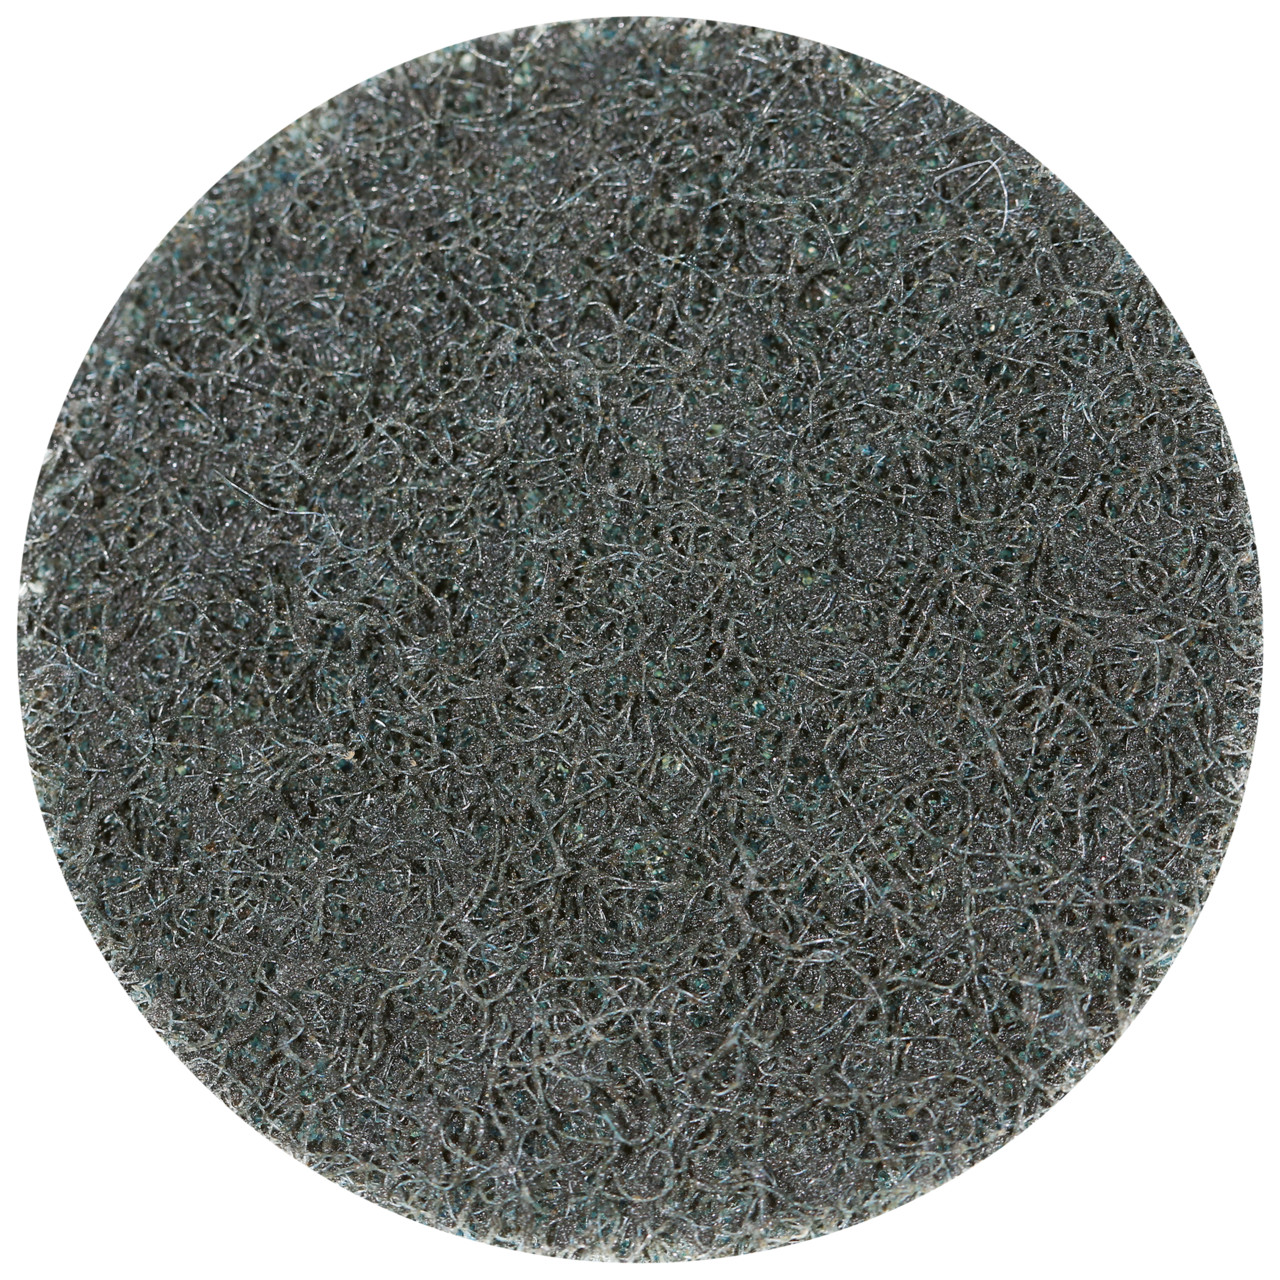 Tyrolit SCM QUICK CHANGE DISC Dimensione 75xR Per acciaio, acciaio inox, metalli non ferrosi, plastica e legno, GROB, forma: QDISC, Art. 112551